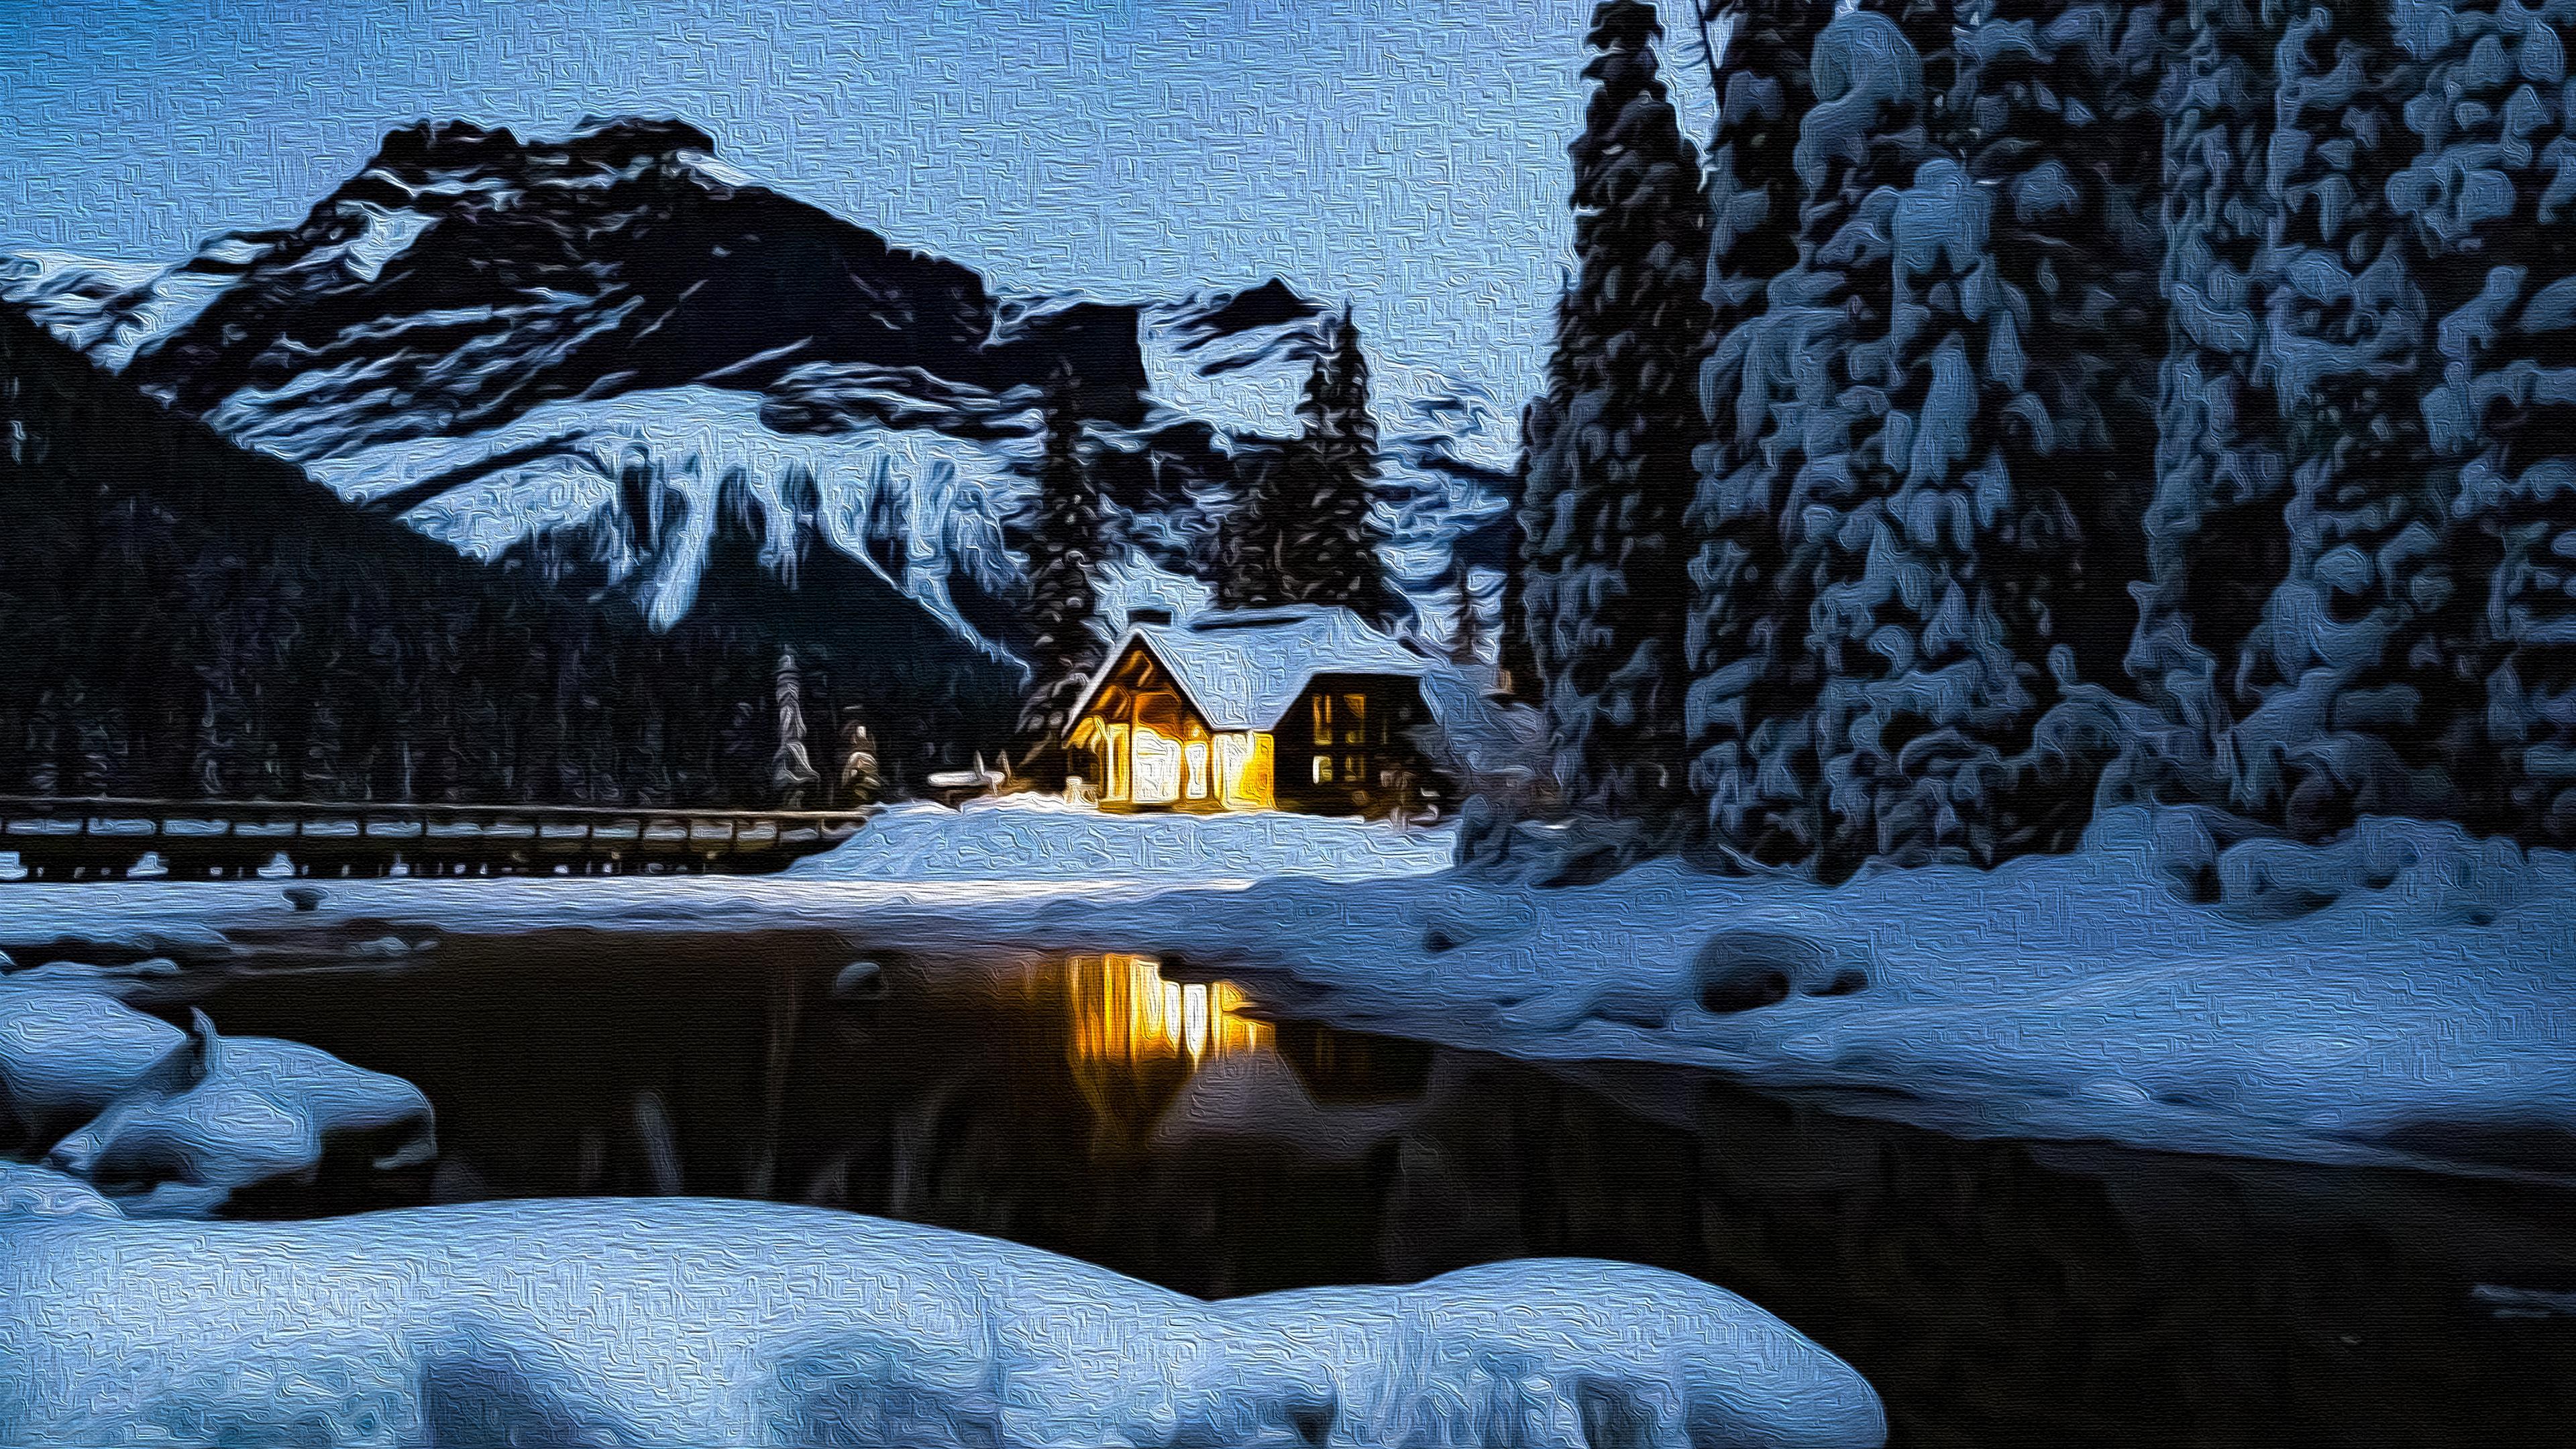 Winter Cabin on Canvas 4k Ultra HD Wallpaper